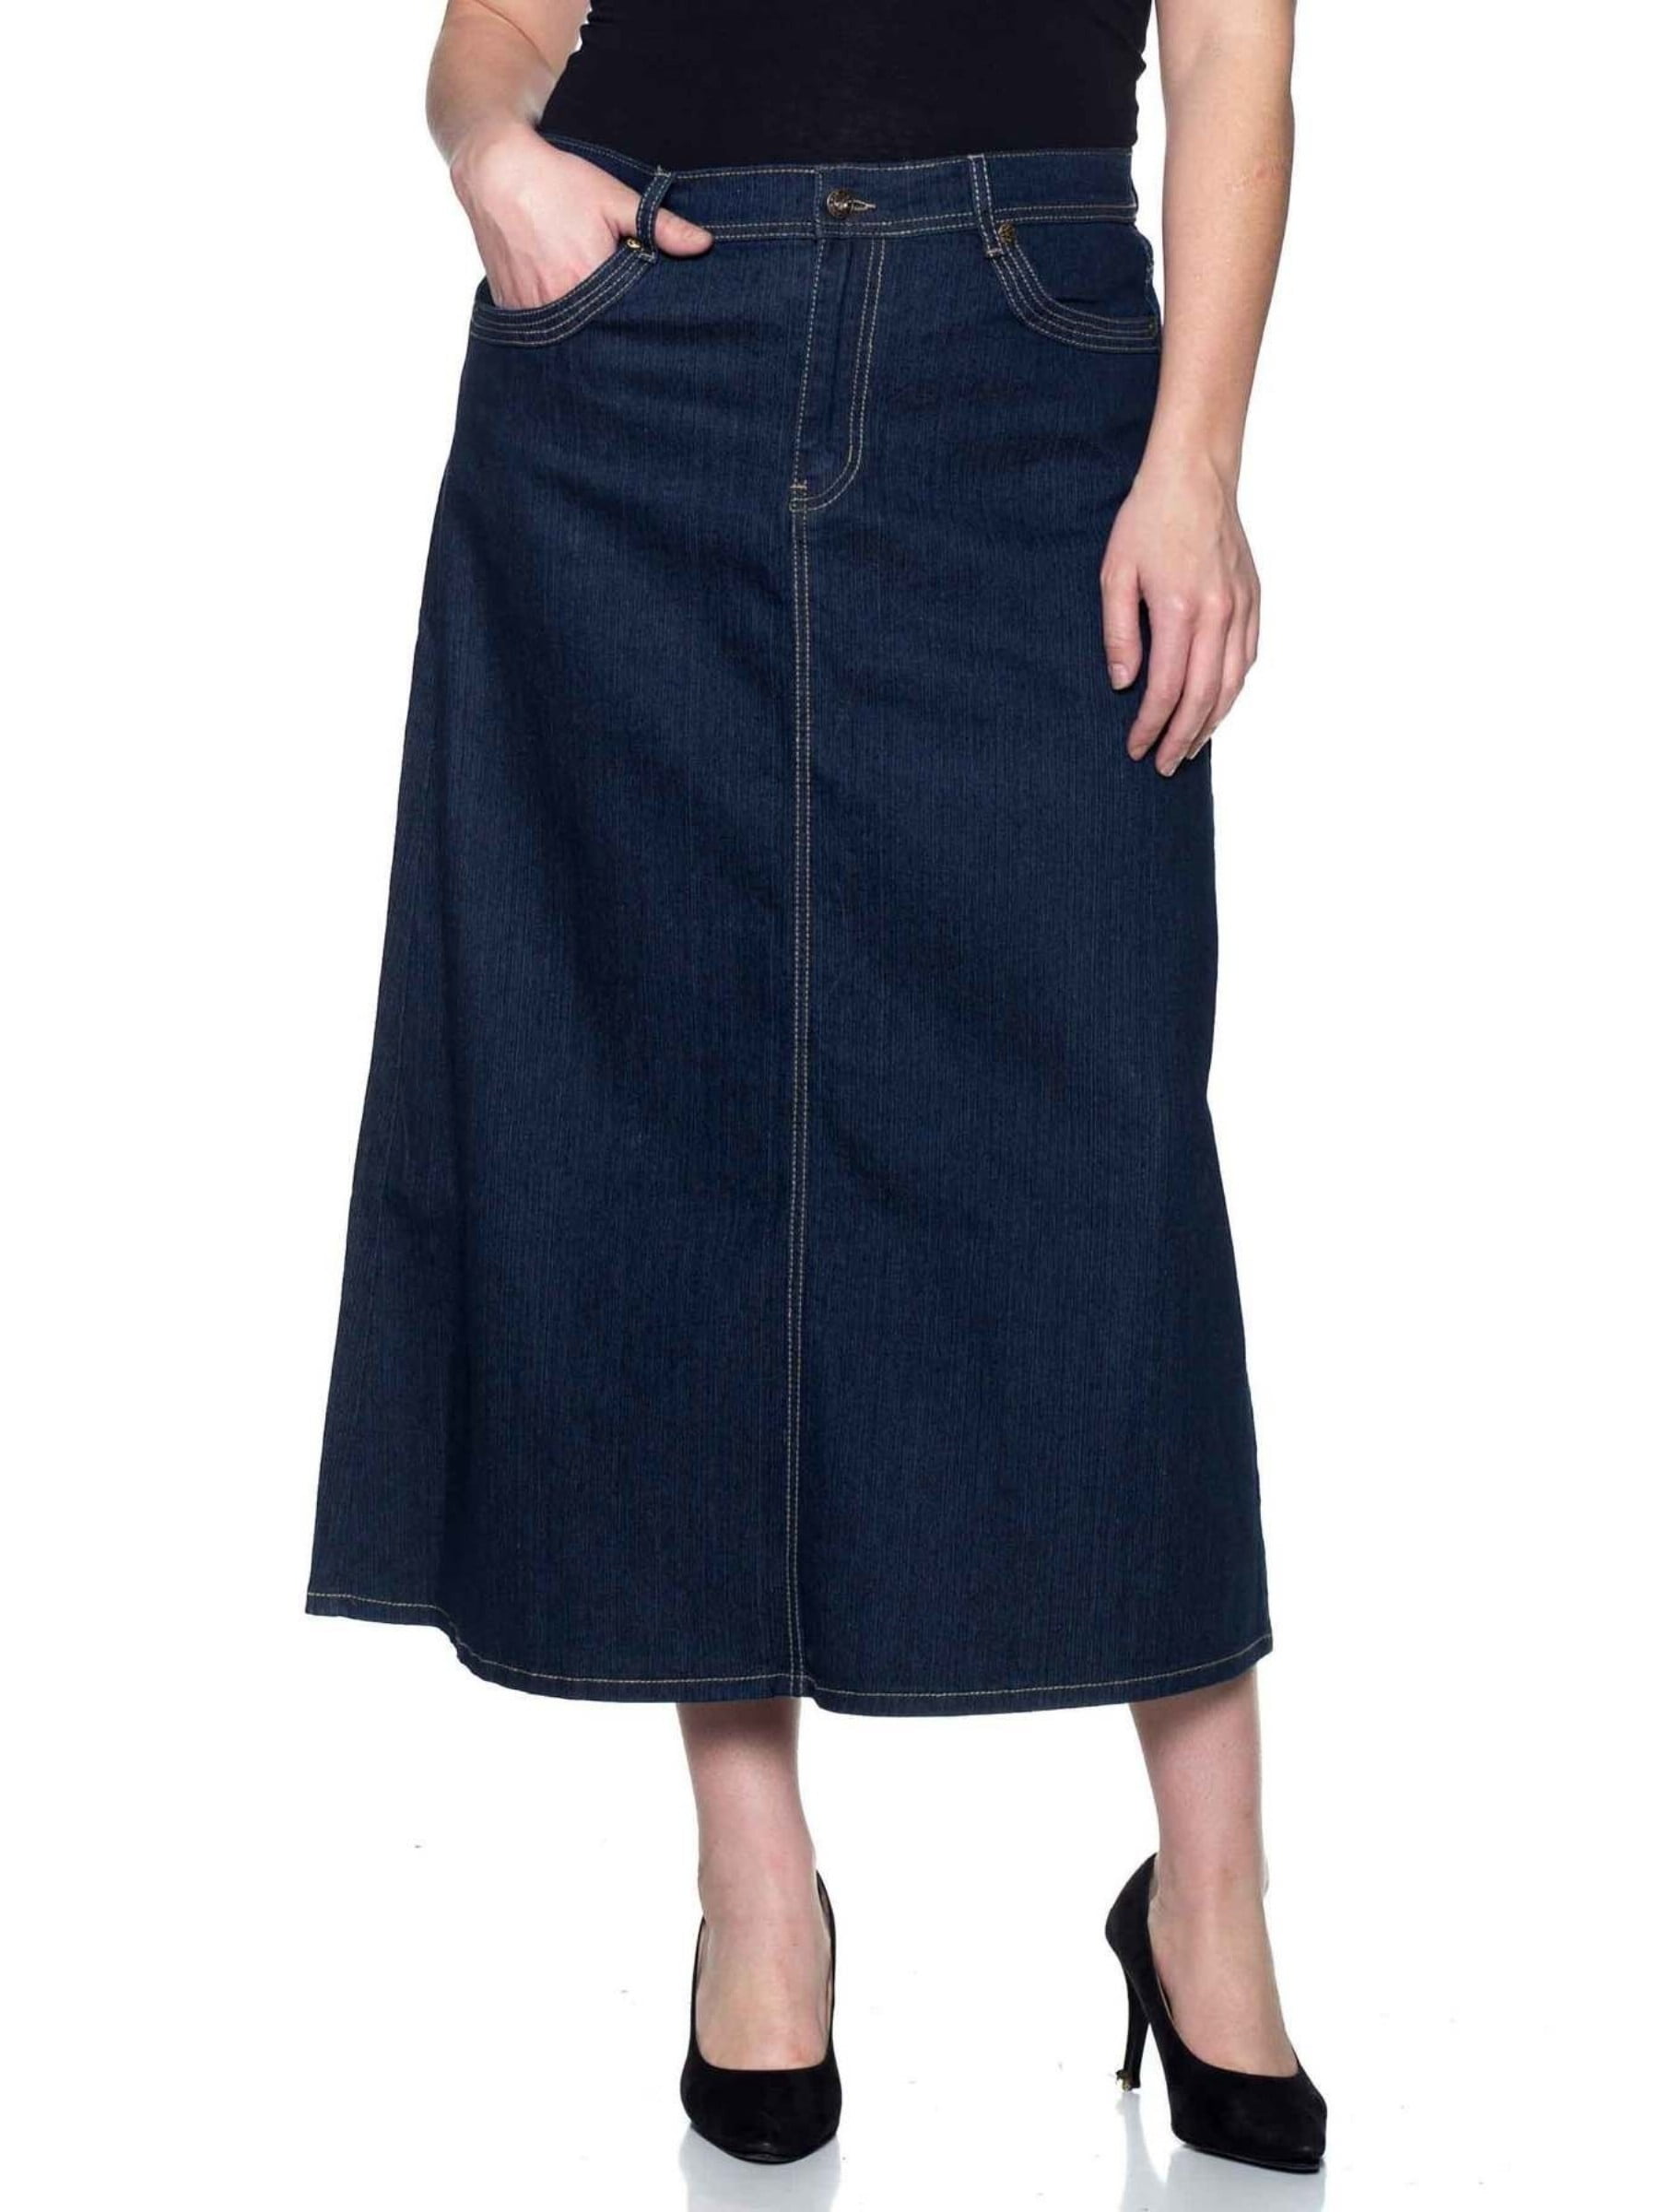 Fashion2love - Women's Plus Size Mid Rise A-Line Long Jeans Maxi Denim